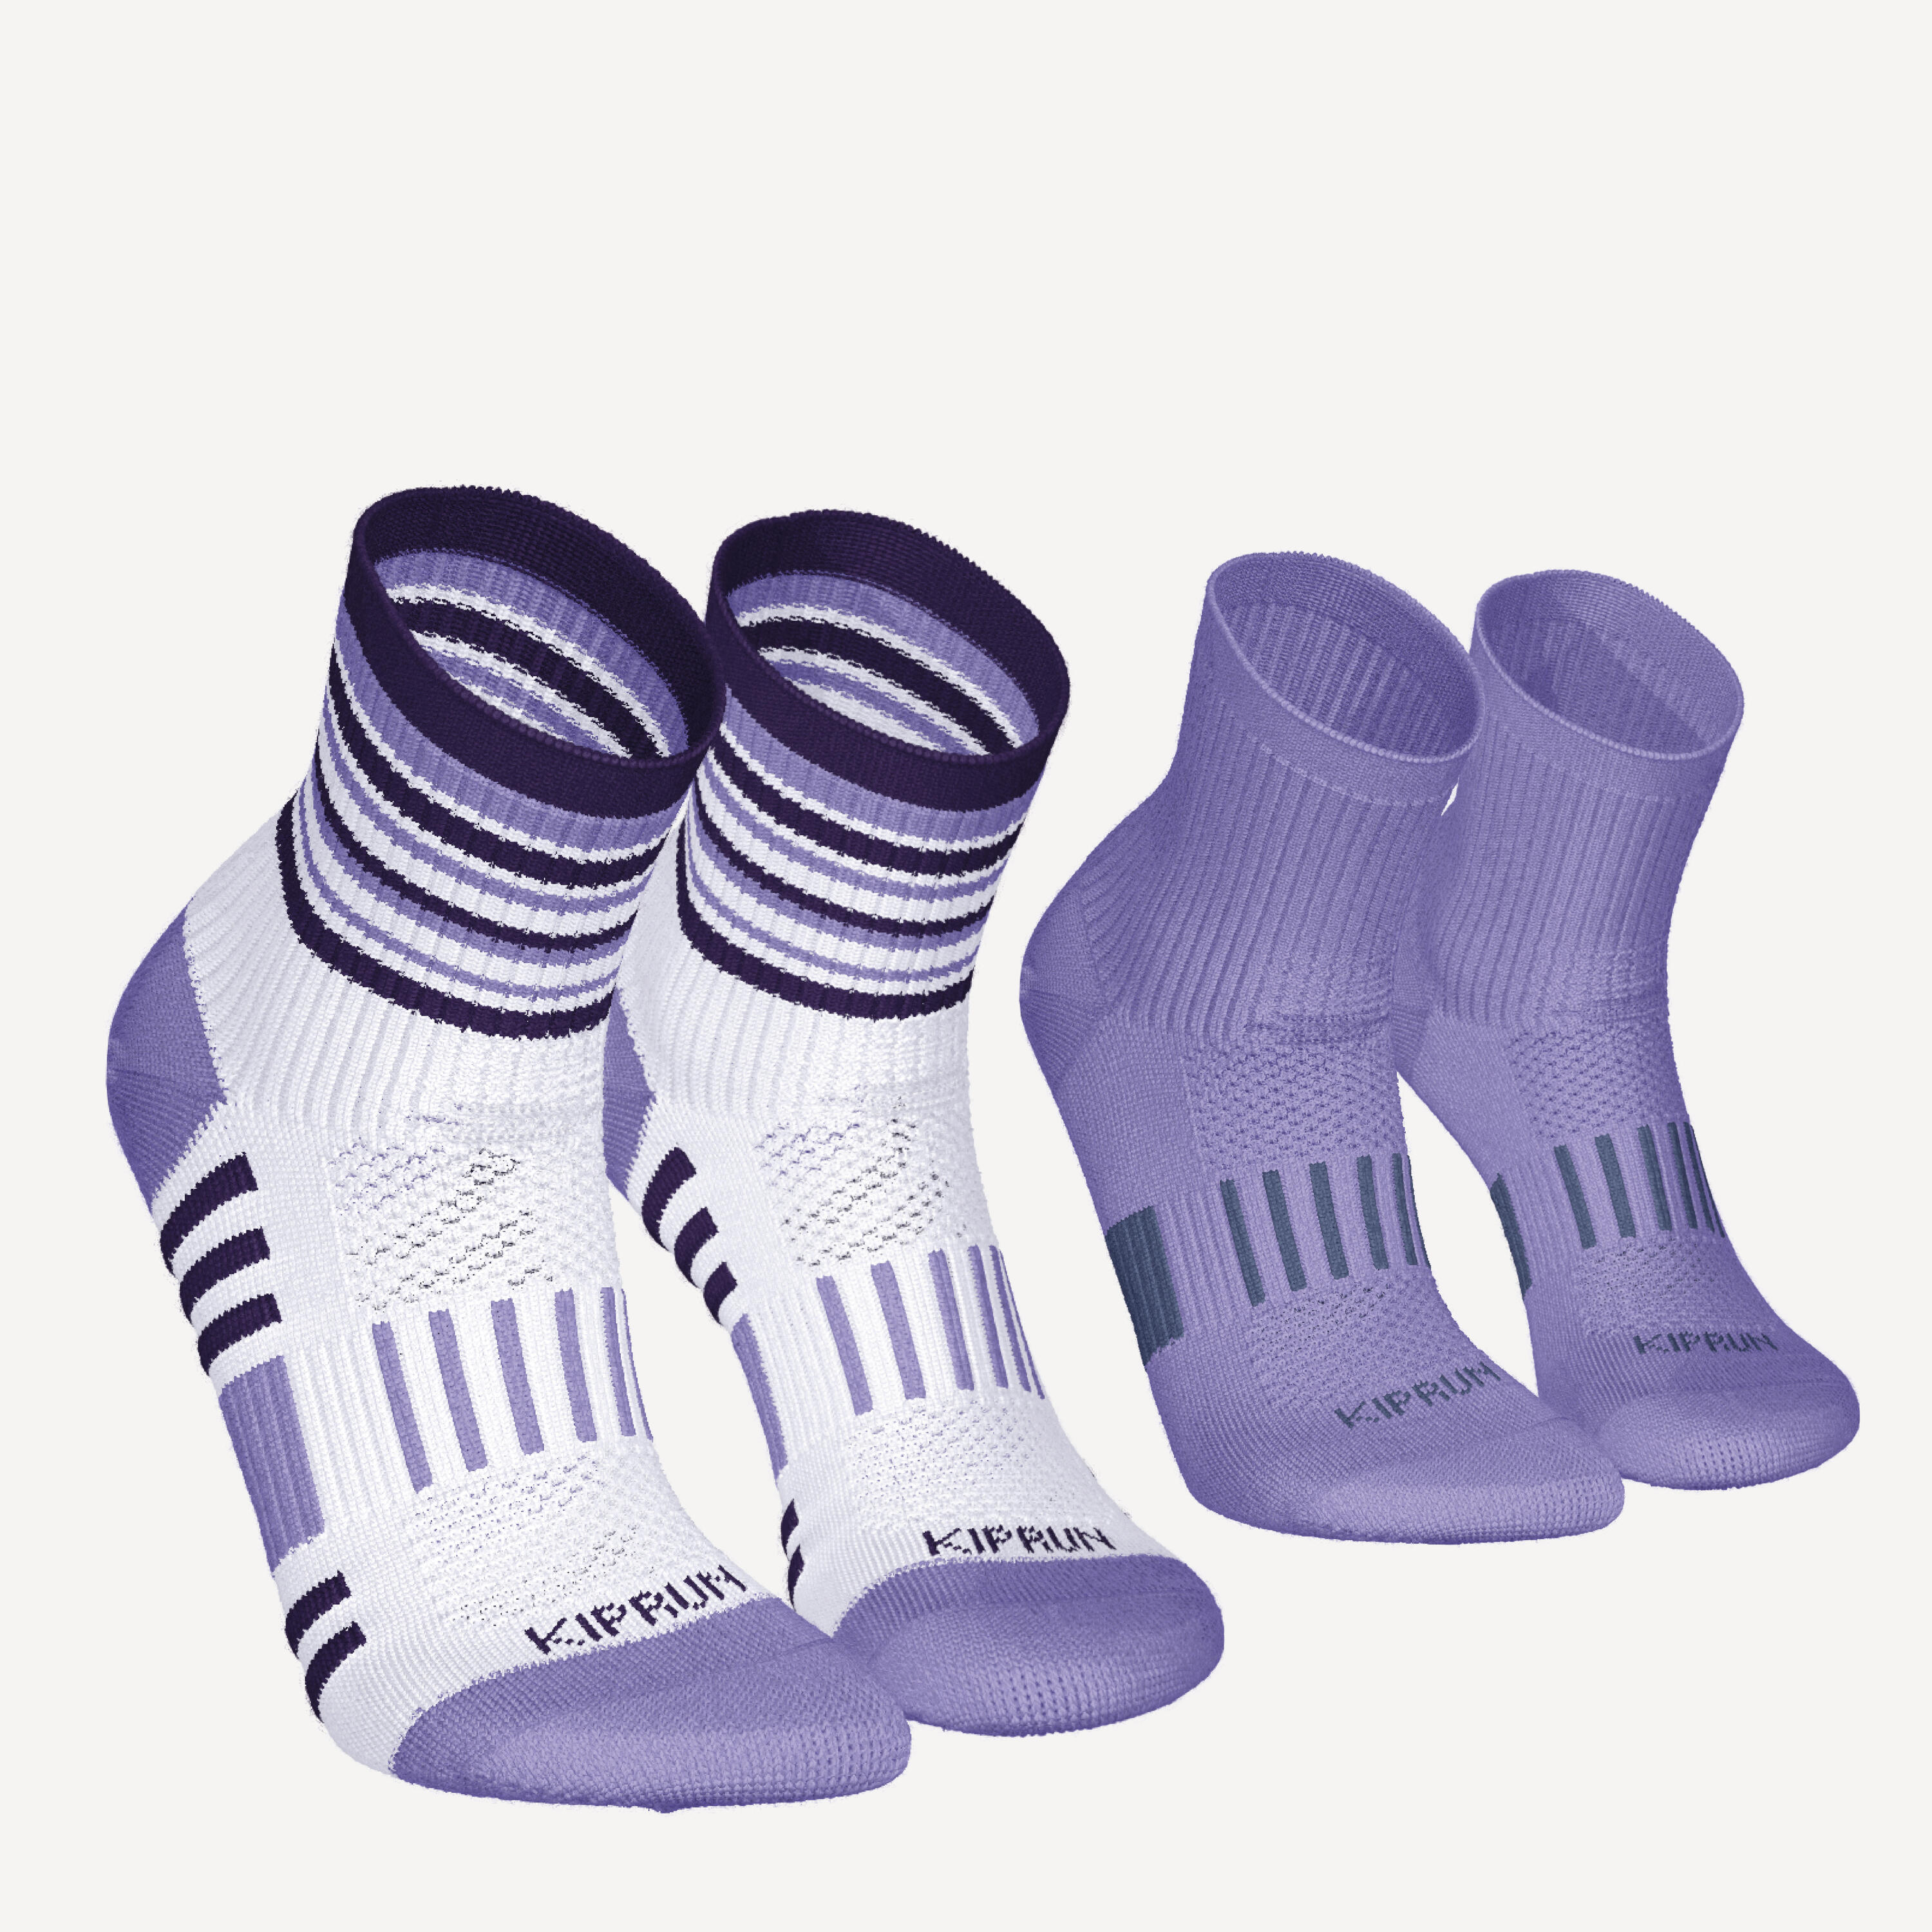 KIPRUN KIPRUN 500 mid kids' comfort running socks 2-pack - striped and plain purple